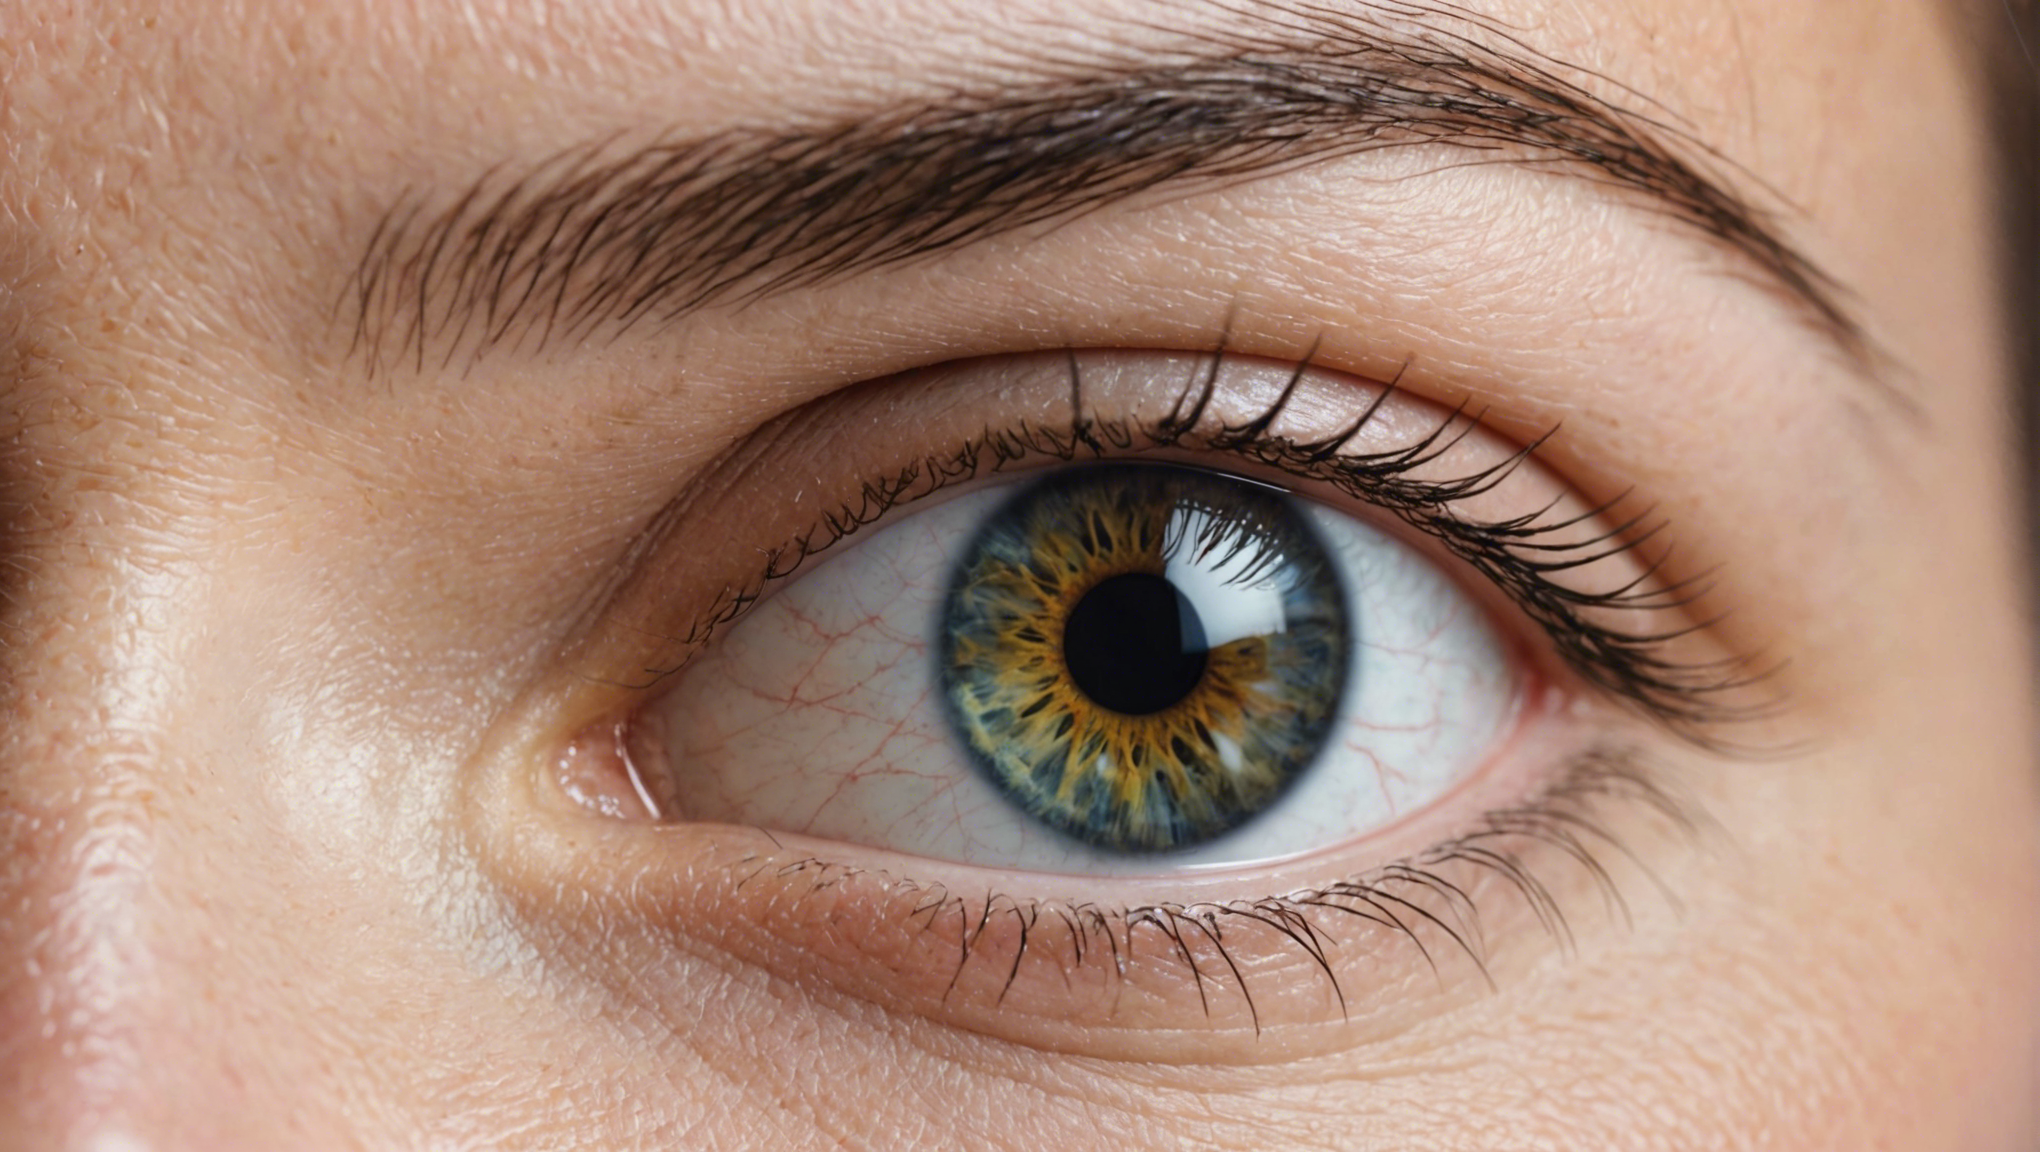 découvrez nos conseils pour assurer une bonne hygiène oculaire et protéger vos yeux au quotidien.